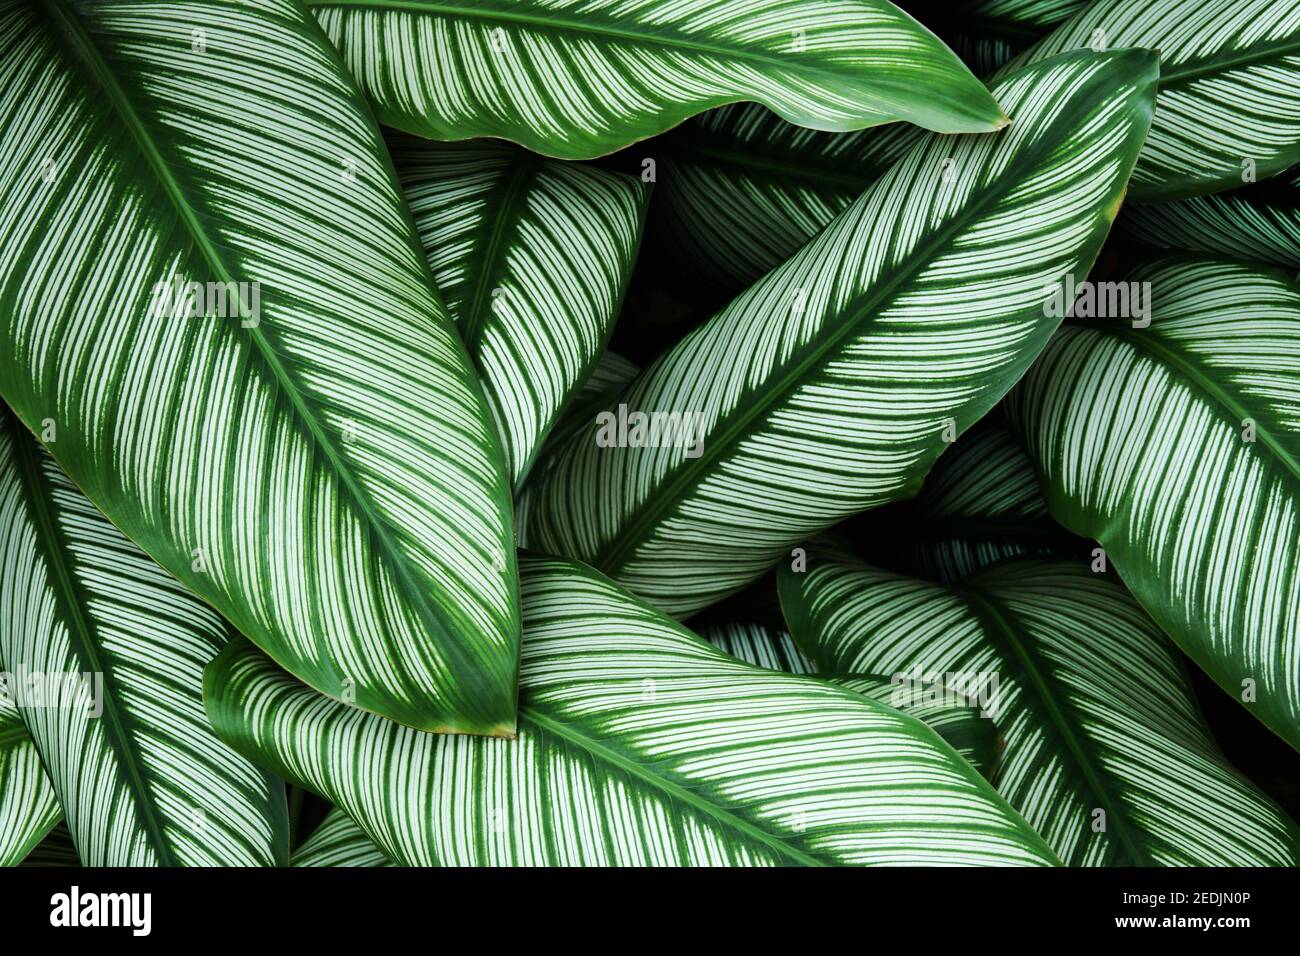 Tropische Blätter Grüne Blätter mit weißen Streifen von Calathea majestica,  Zebra Pflanze als natürliche Textur Hintergrund Stockfotografie - Alamy